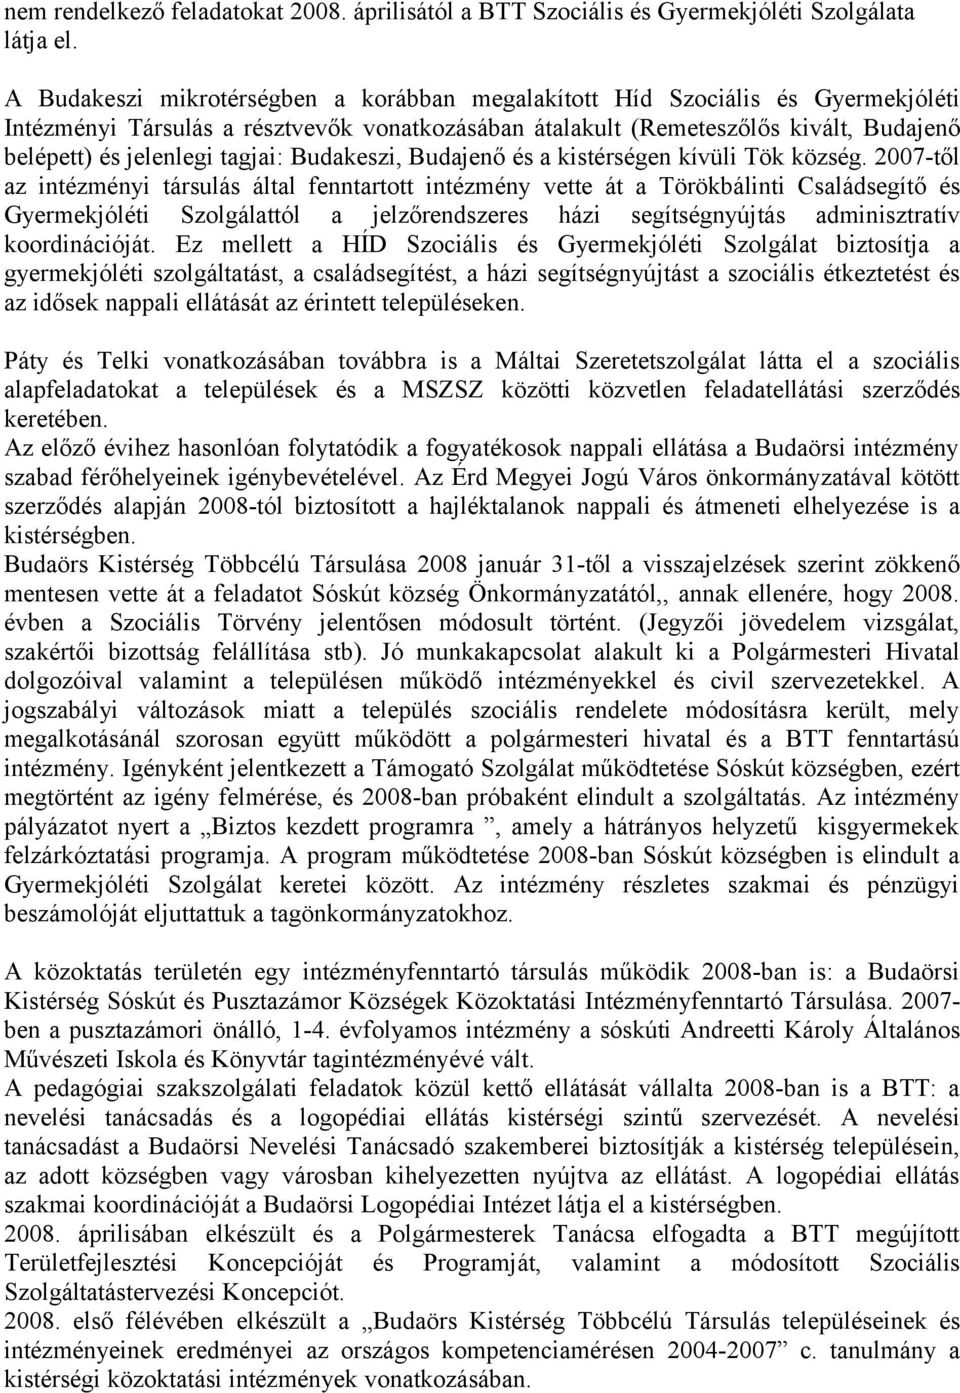 tagjai: Budakeszi, Budajenő és a kistérségen kívüli Tök község.